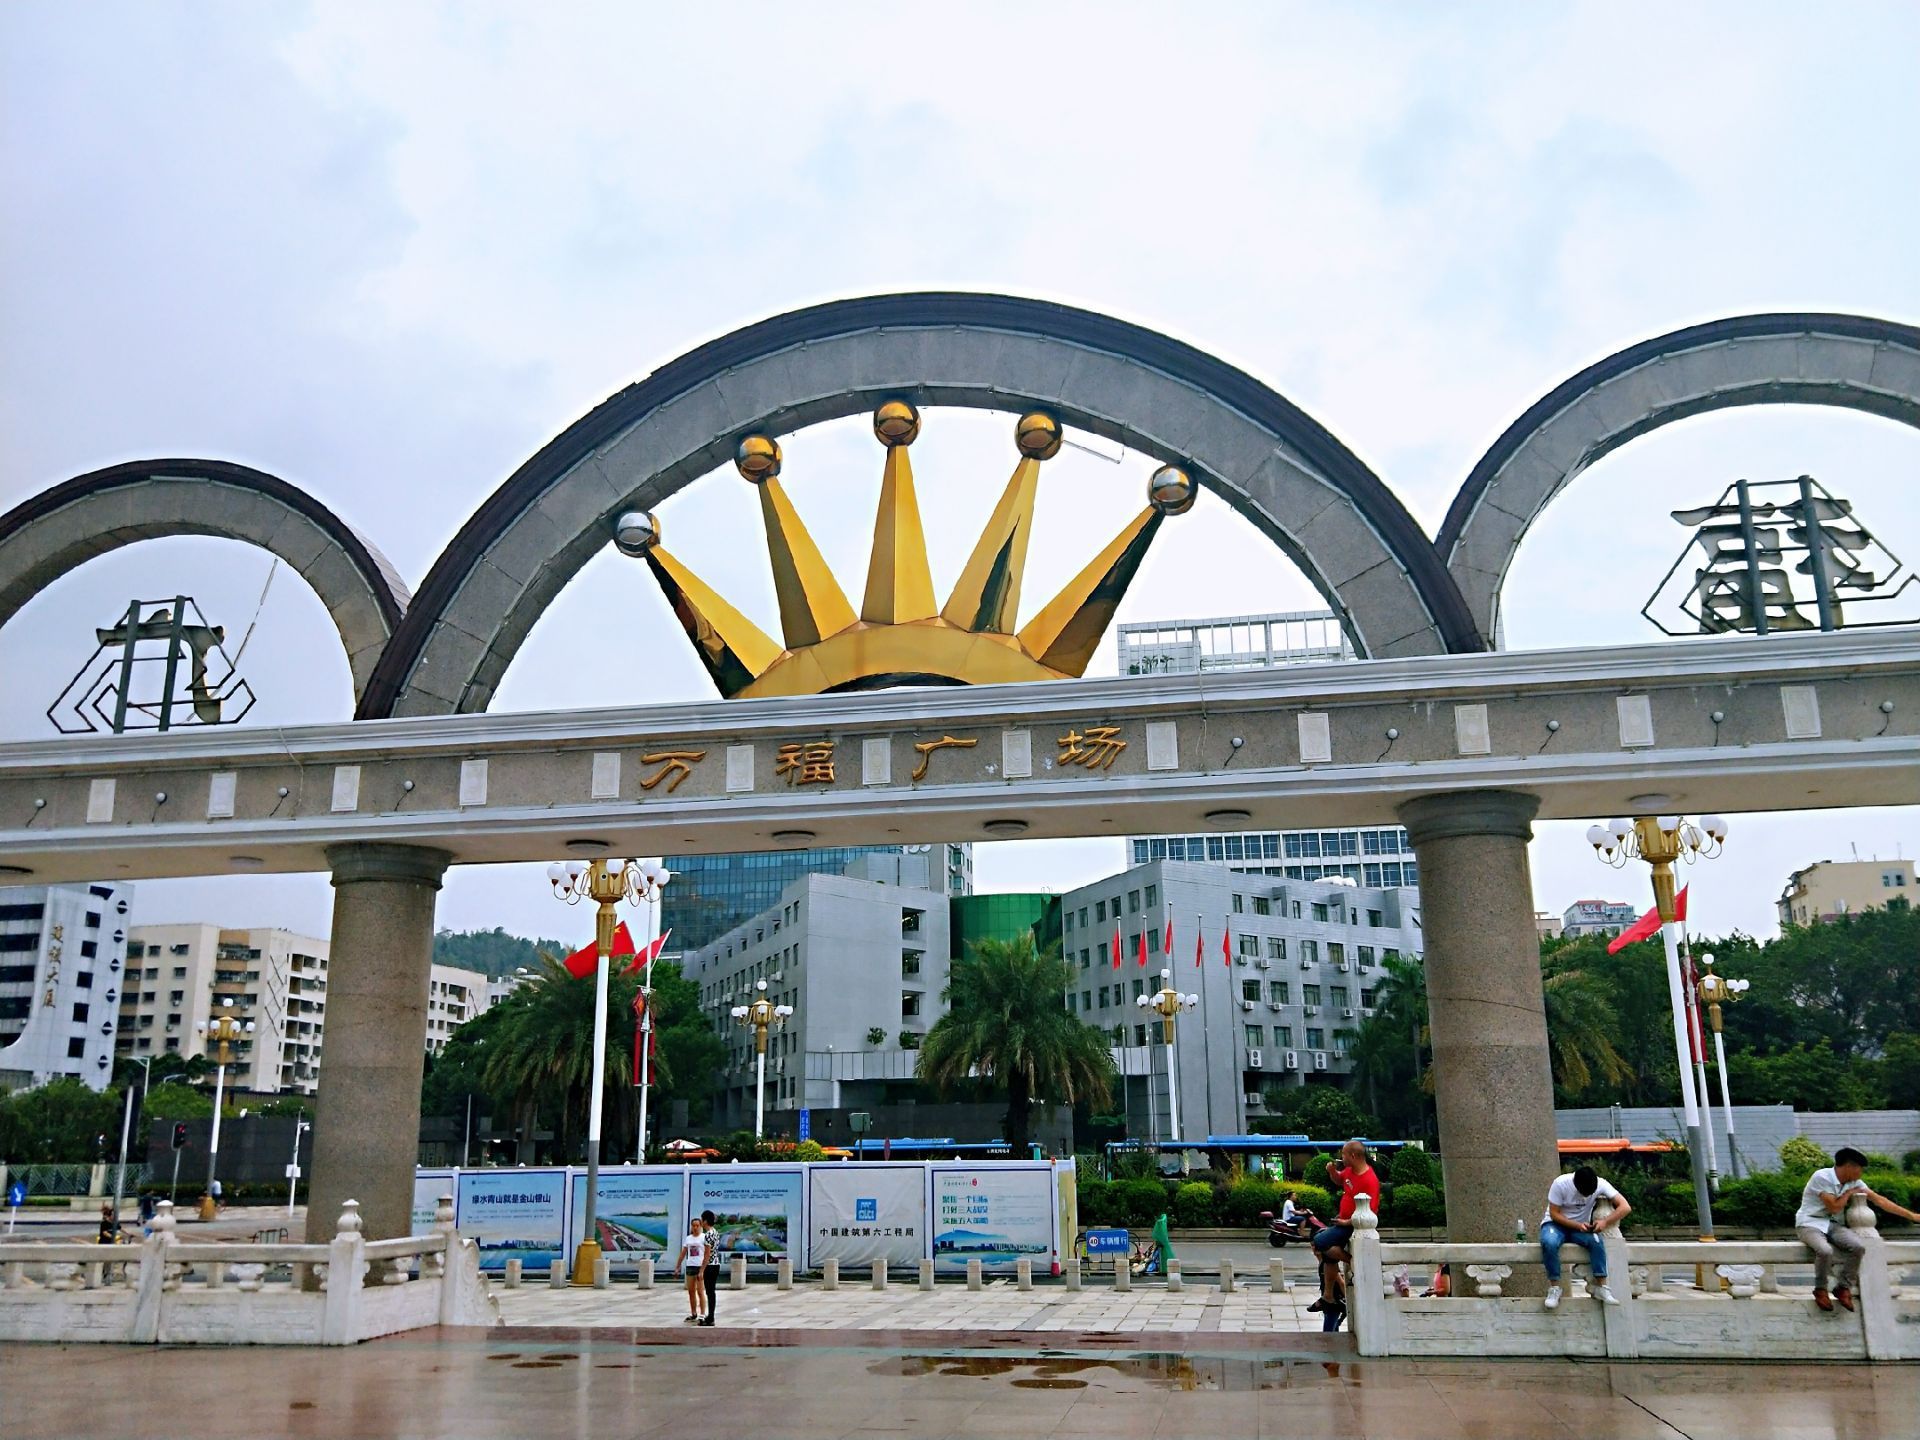 在深圳宝安区福永镇有个著名的广场名叫万福广场,这边有多达一万个福